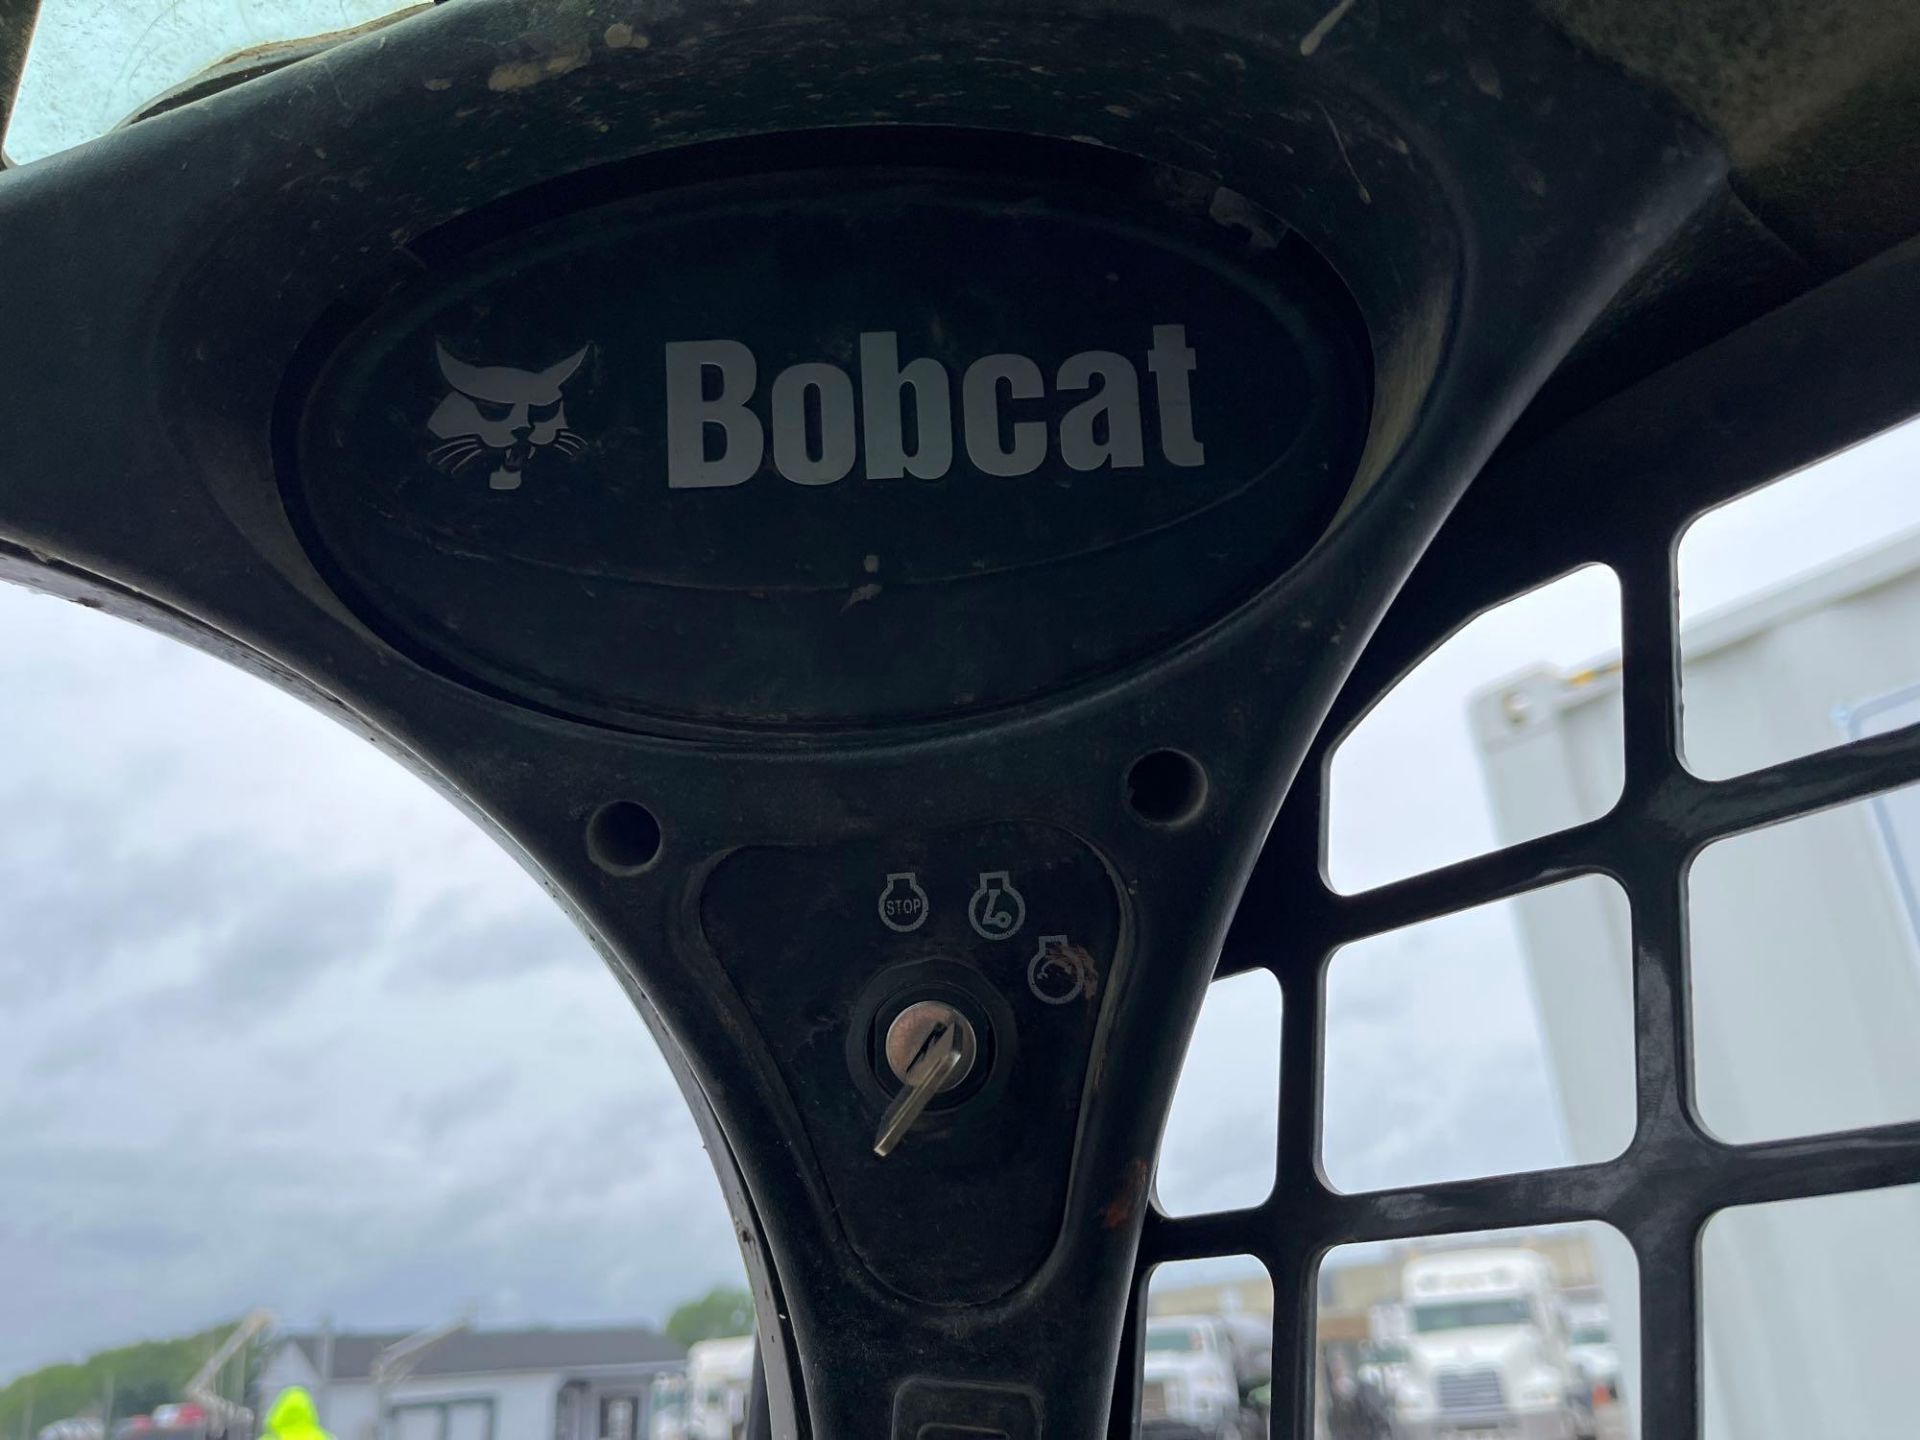 2017 Bobcat T550 Track Loader - Image 8 of 17